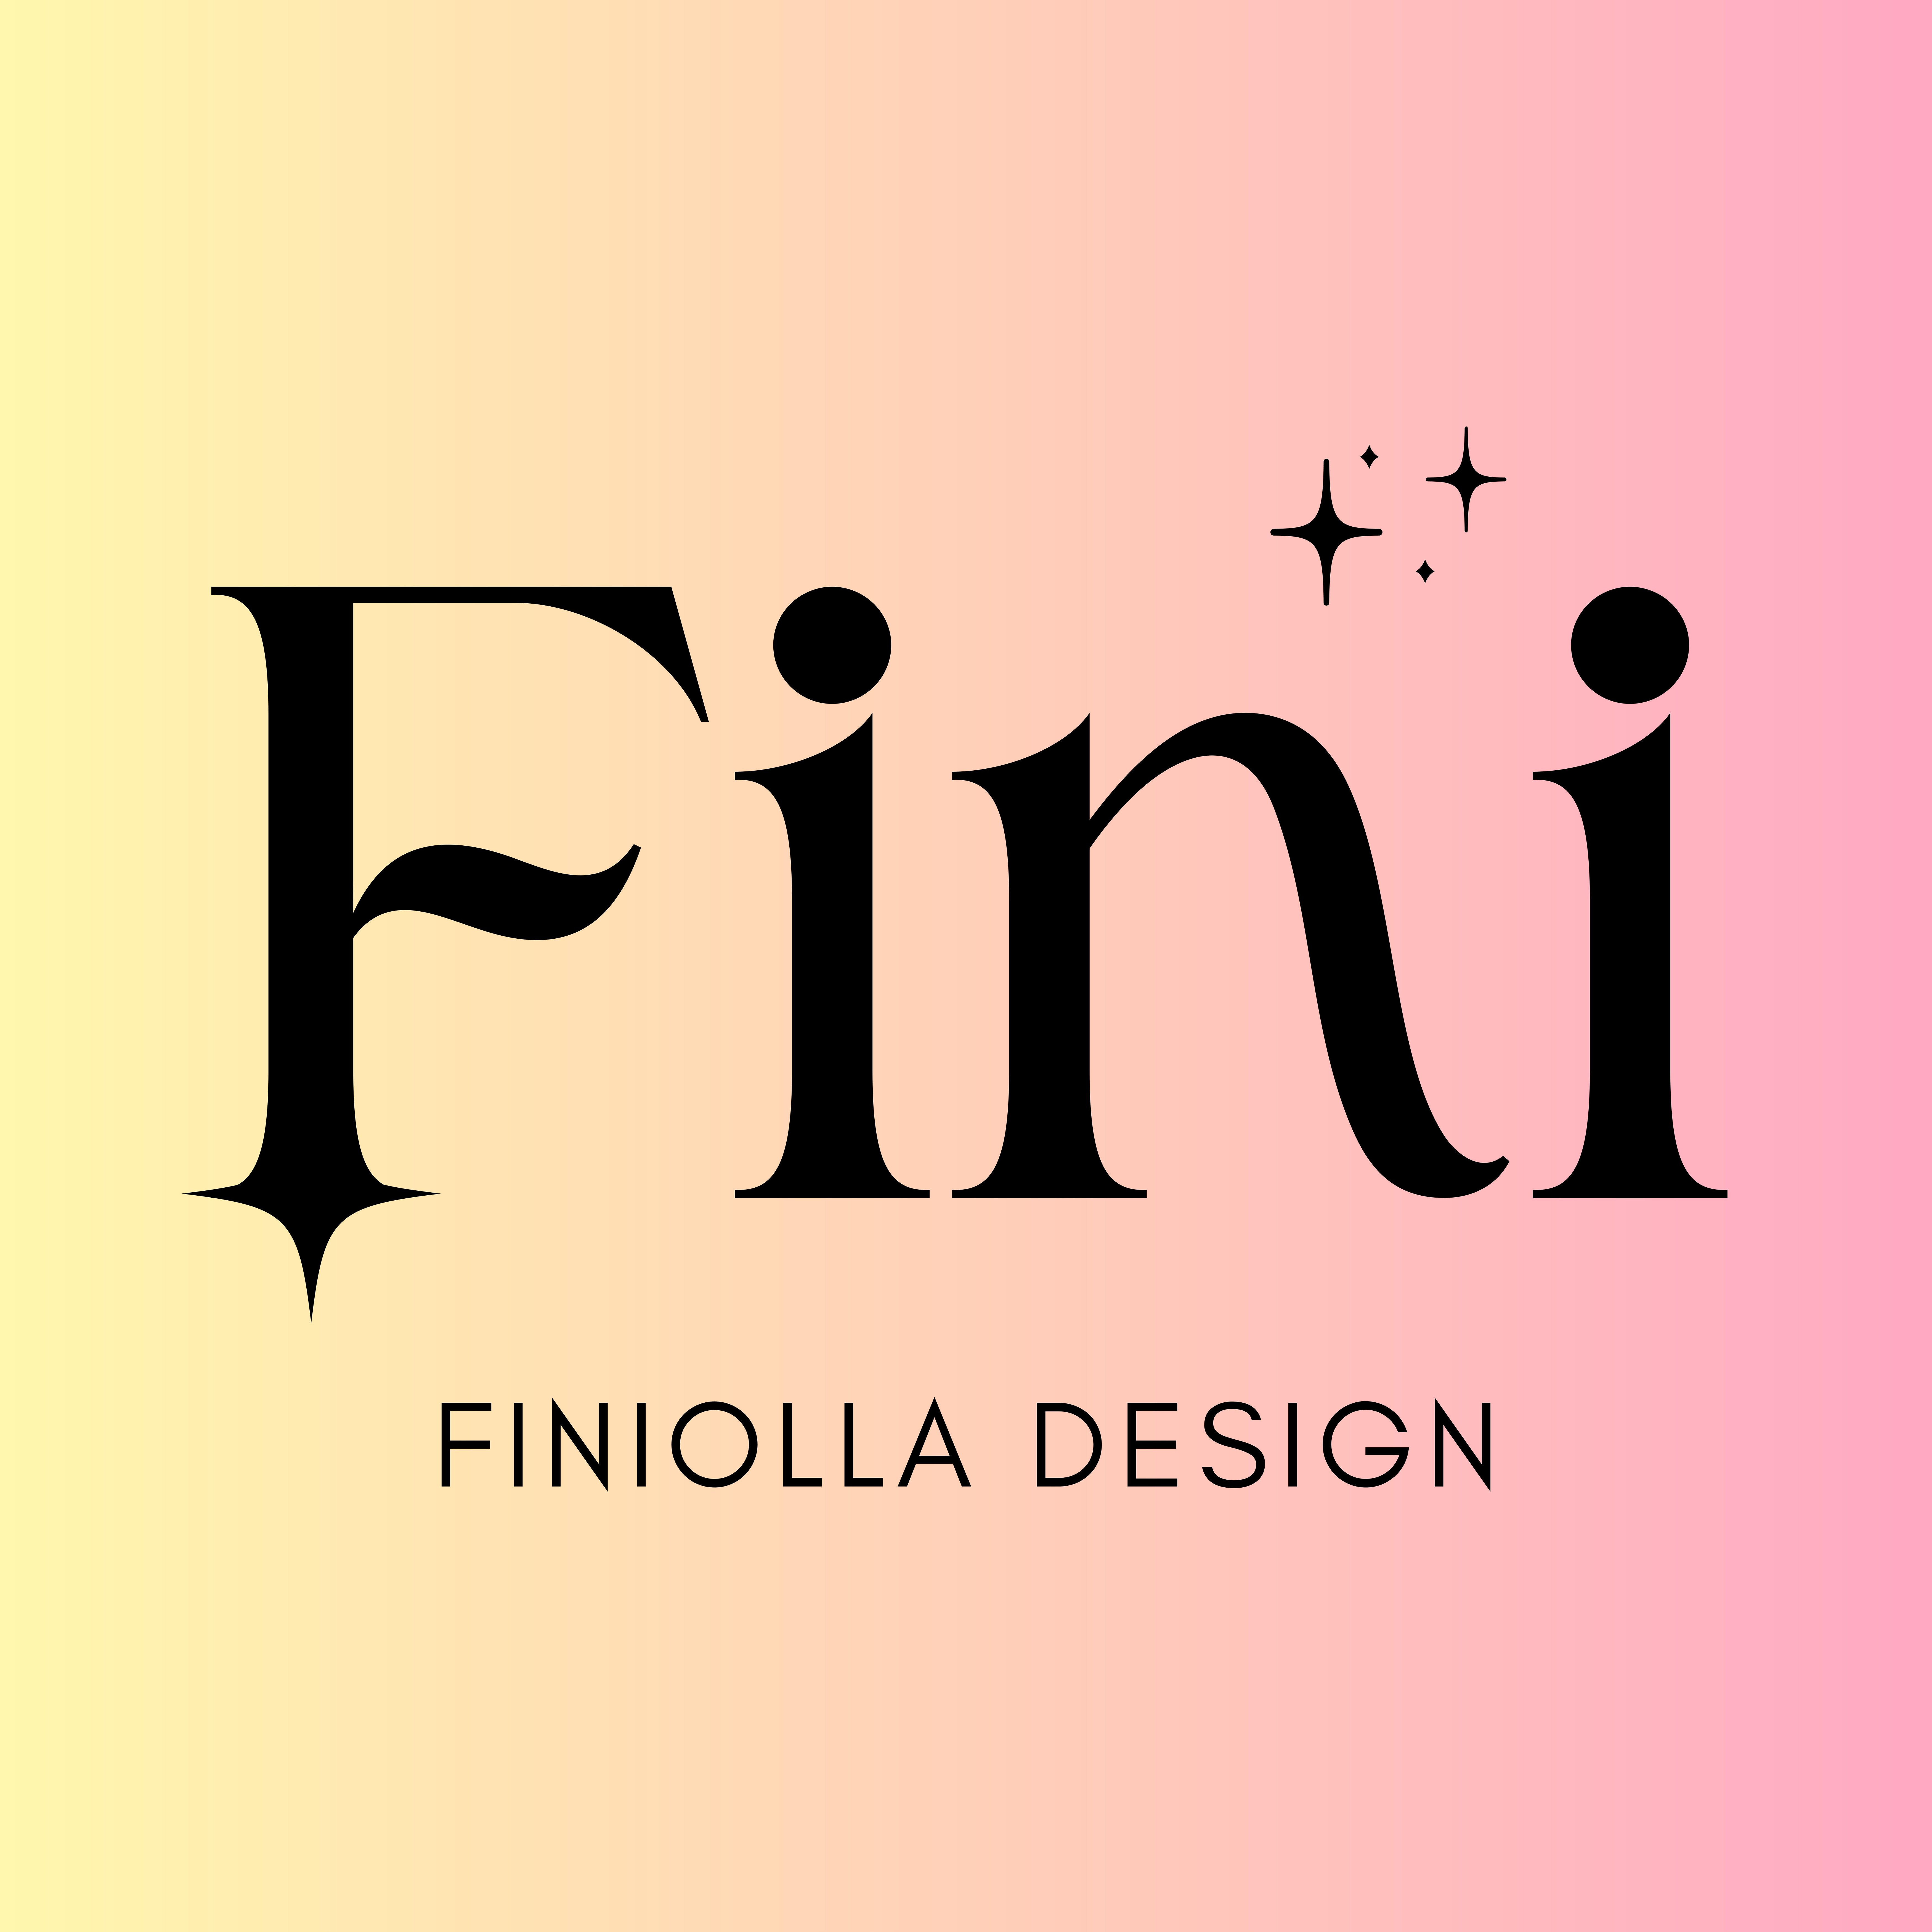 Finiolla Designfoto de perfil de